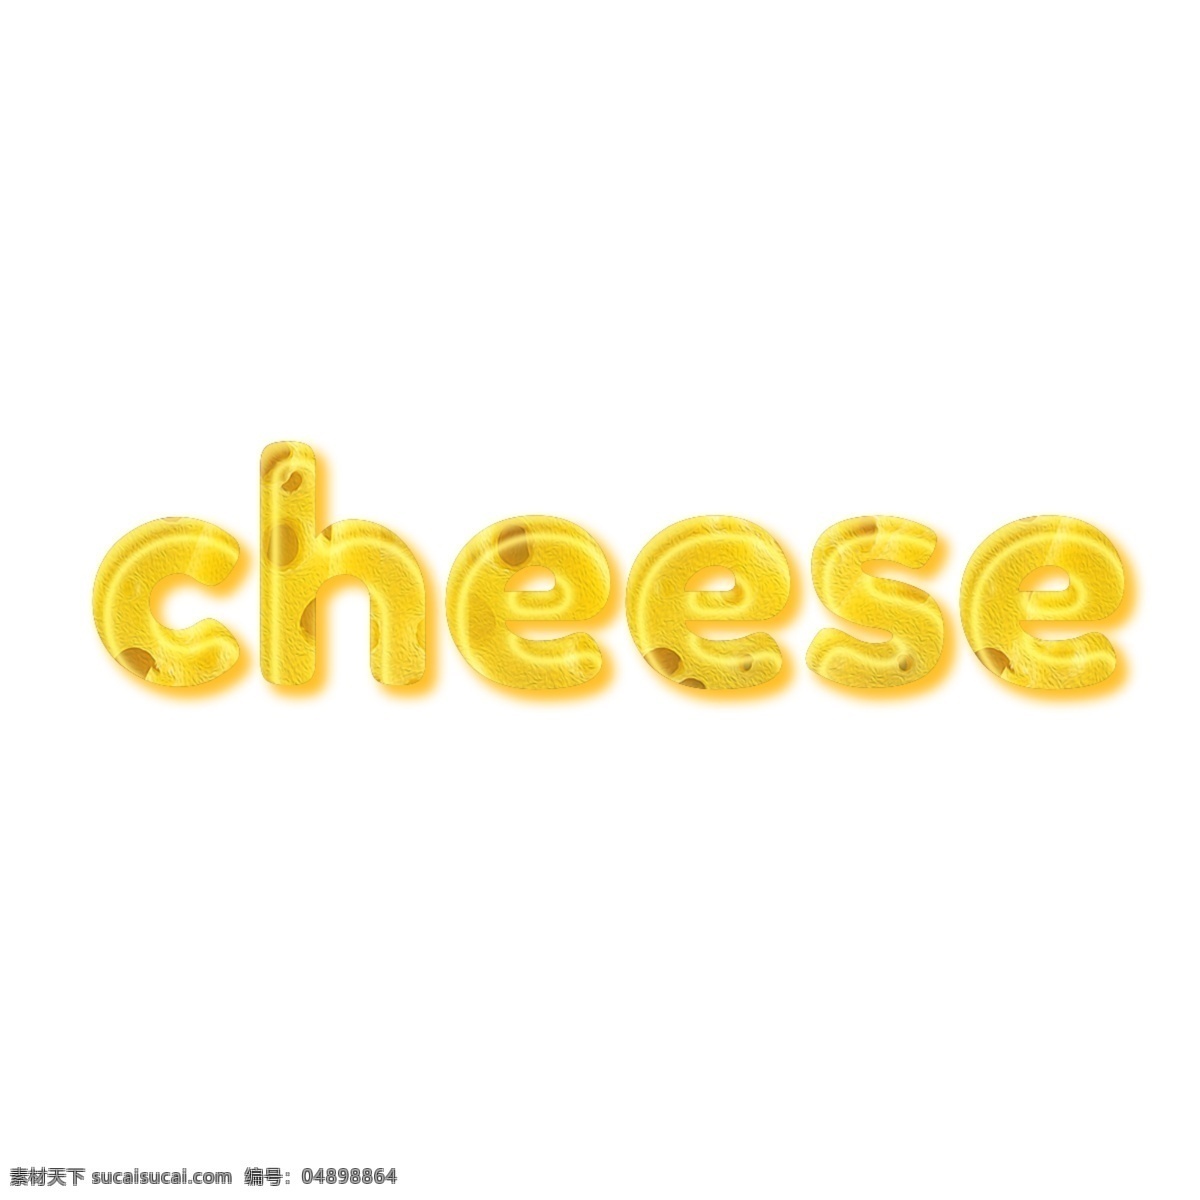 creatvie 芝士 汉堡 字体 芝士汉堡 汉堡包 叶黄色 起司 牛油 餐饮 传单 简单的字体 书法